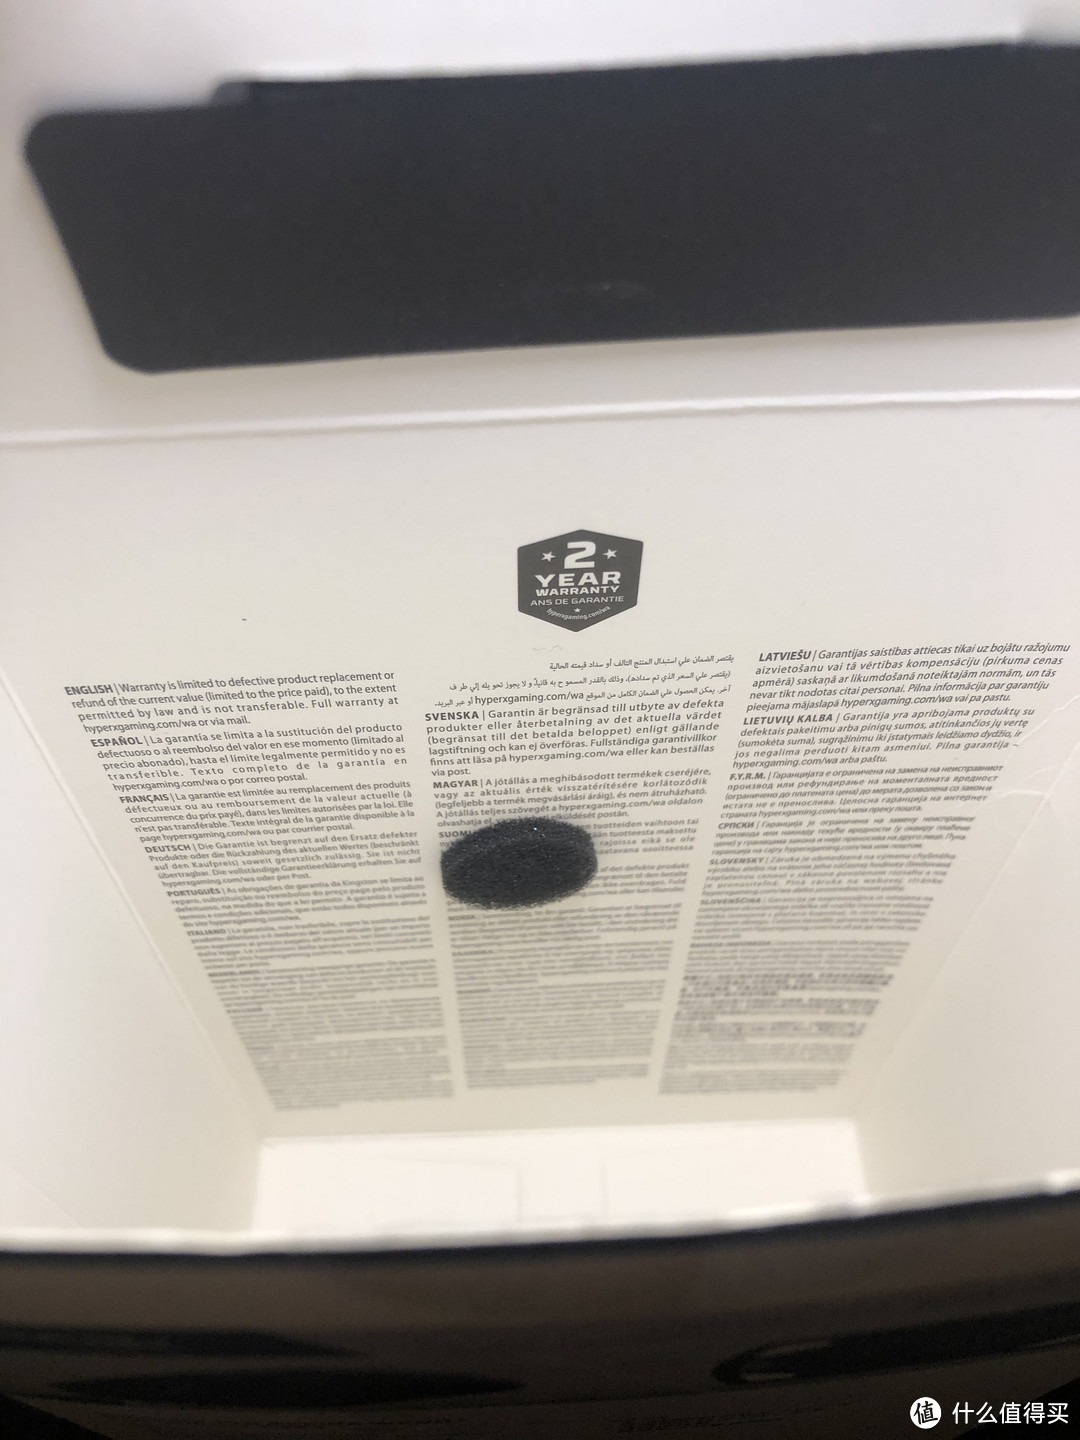 保修注意事项用多语言注明在盒内。且贴有一个防撞棉。不知道为什么印在这儿。。。